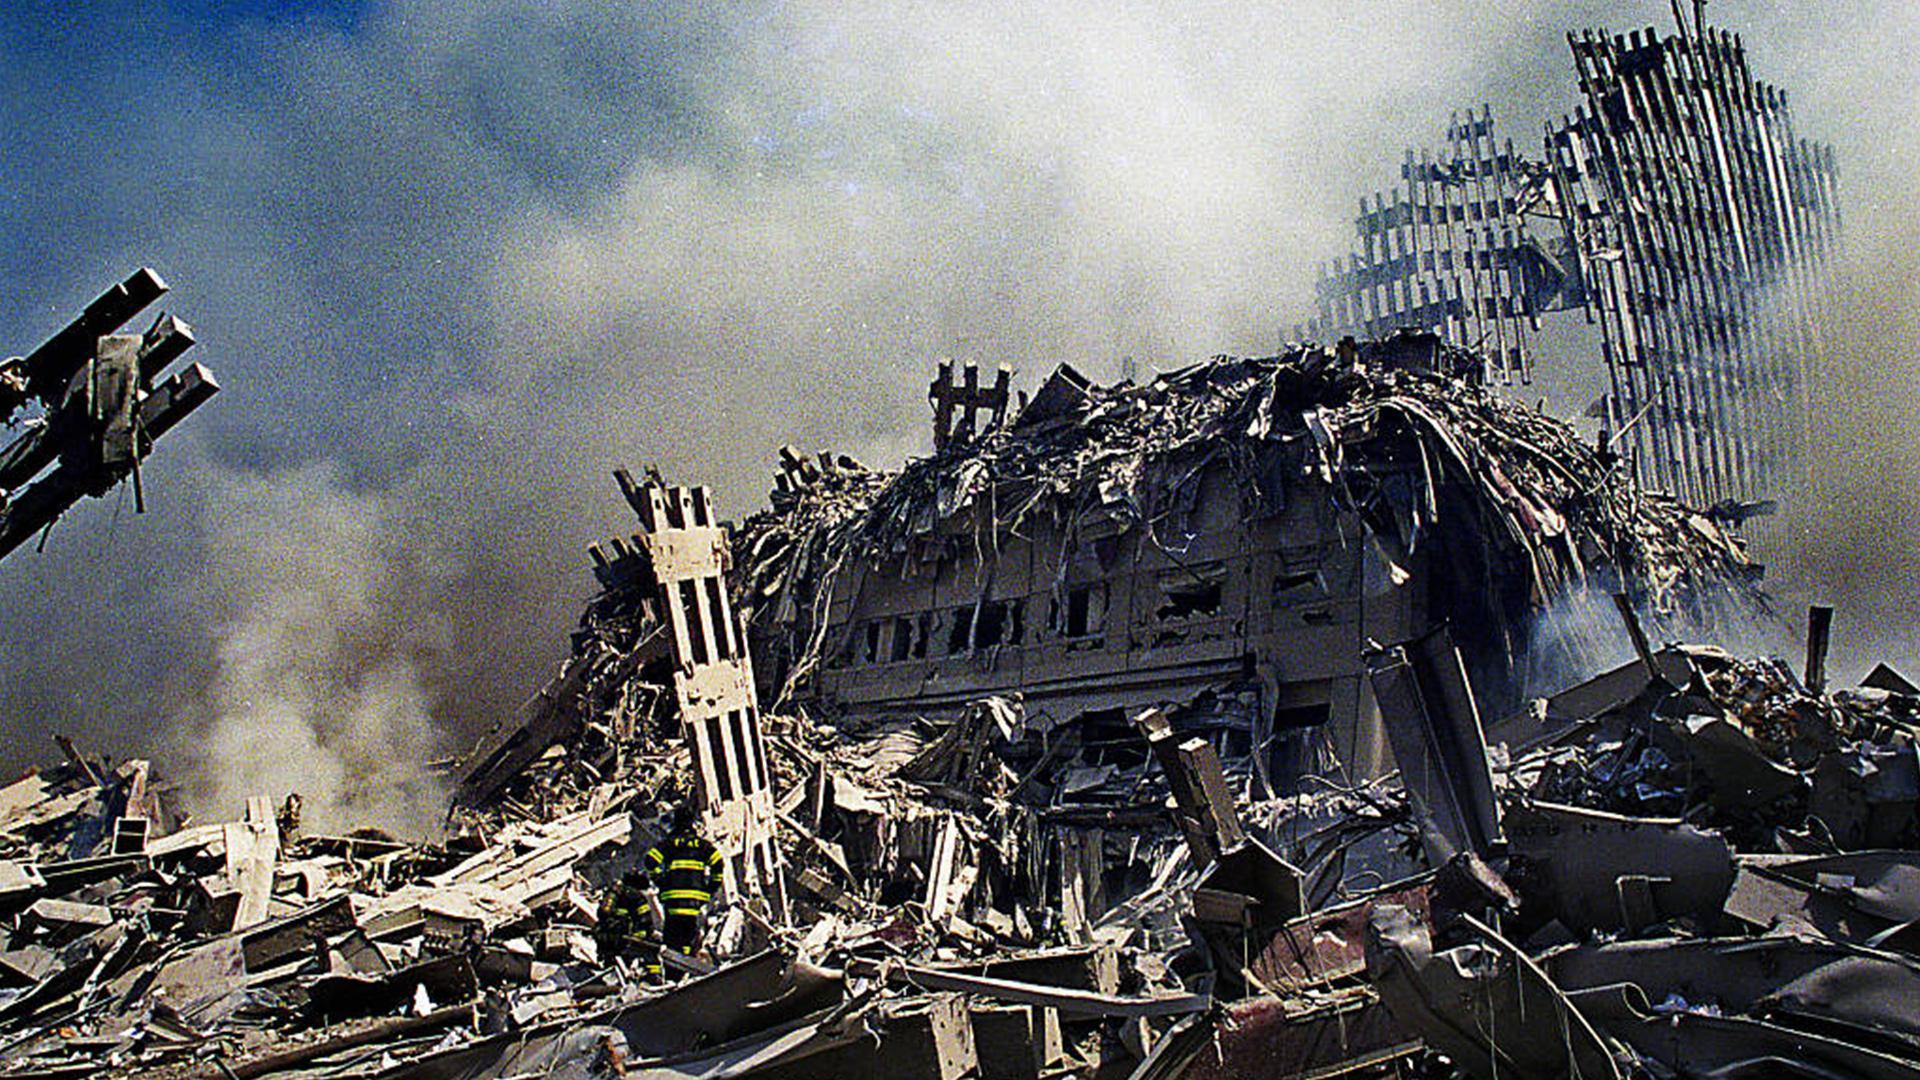 Теракт 11 сентября 2001 сколько погибло людей. Шанксвилл 11 сентября. Катастрофа 2001 башни Близнецы. Теракты 11 сентября в США. 2996 Погибших.